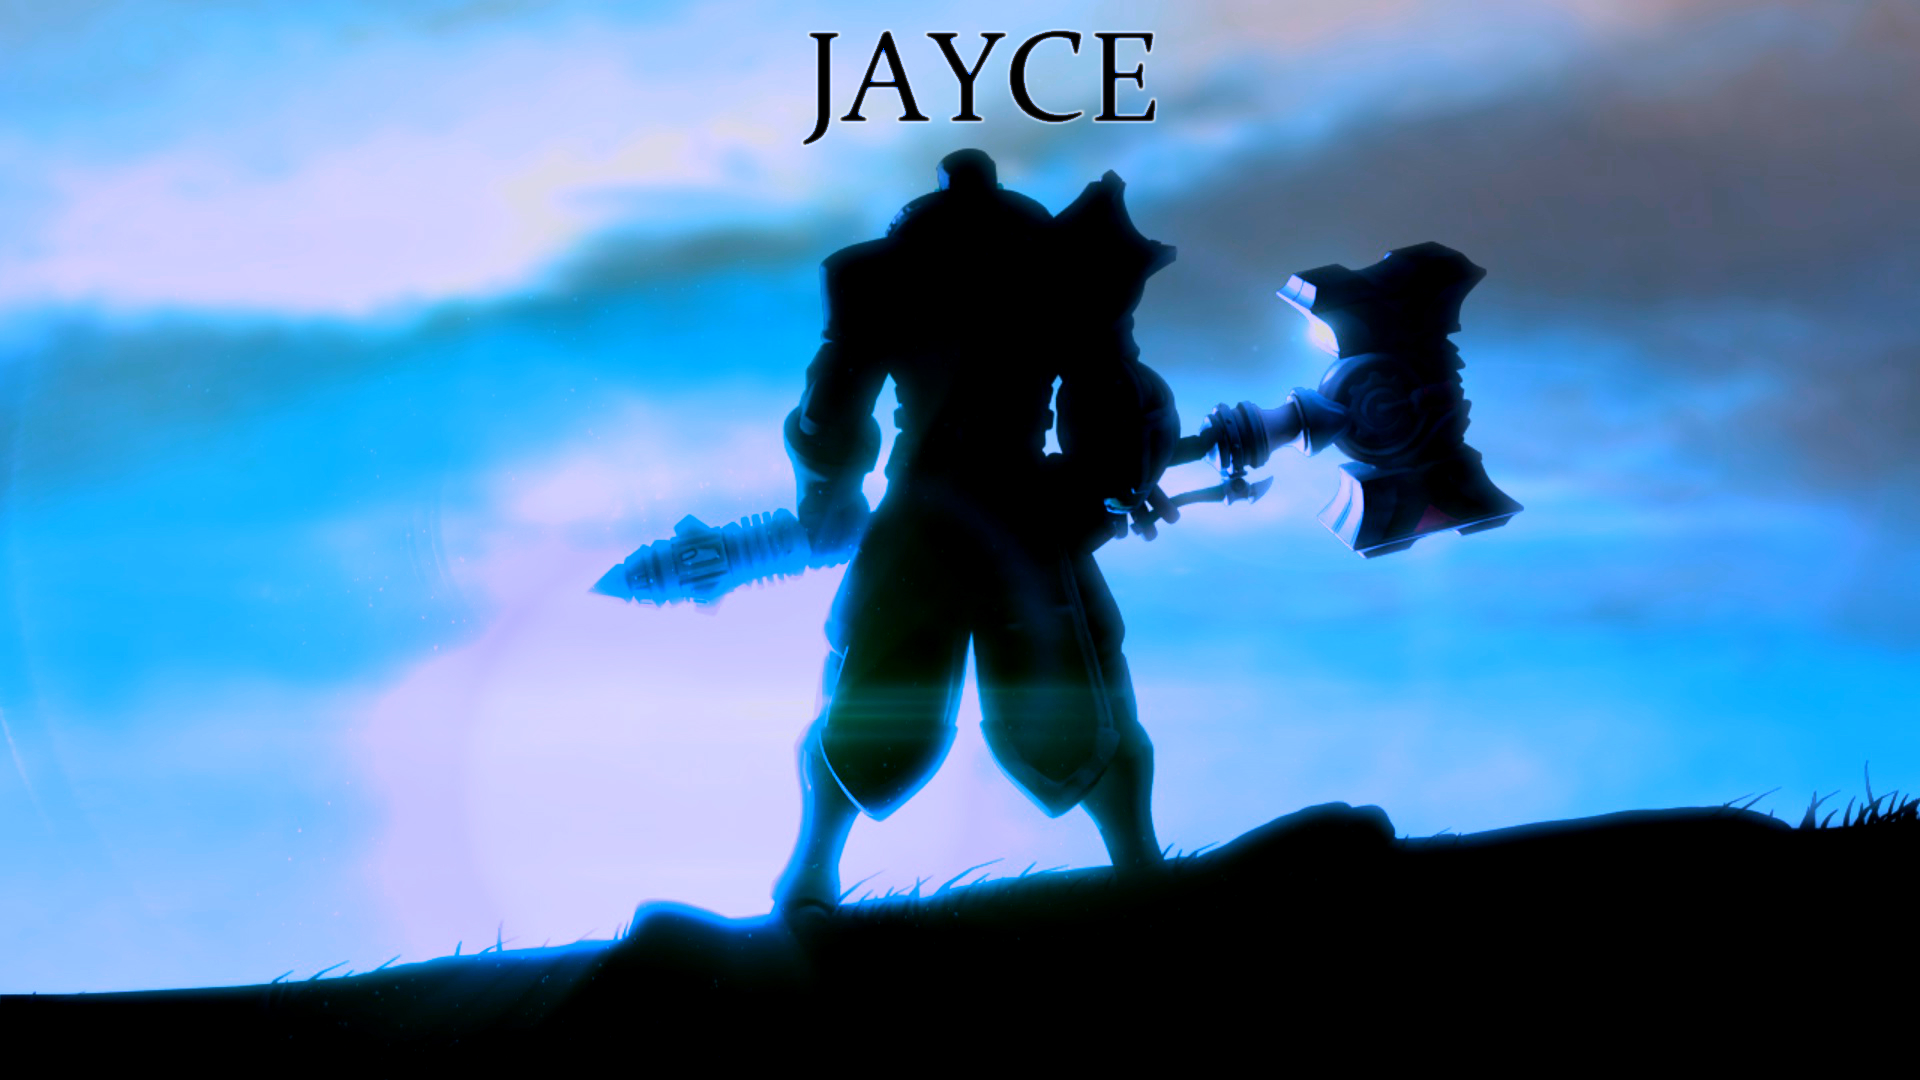 jayce fondo de pantalla,cielo,juego de acción y aventura,personaje de ficción,silueta,mundo